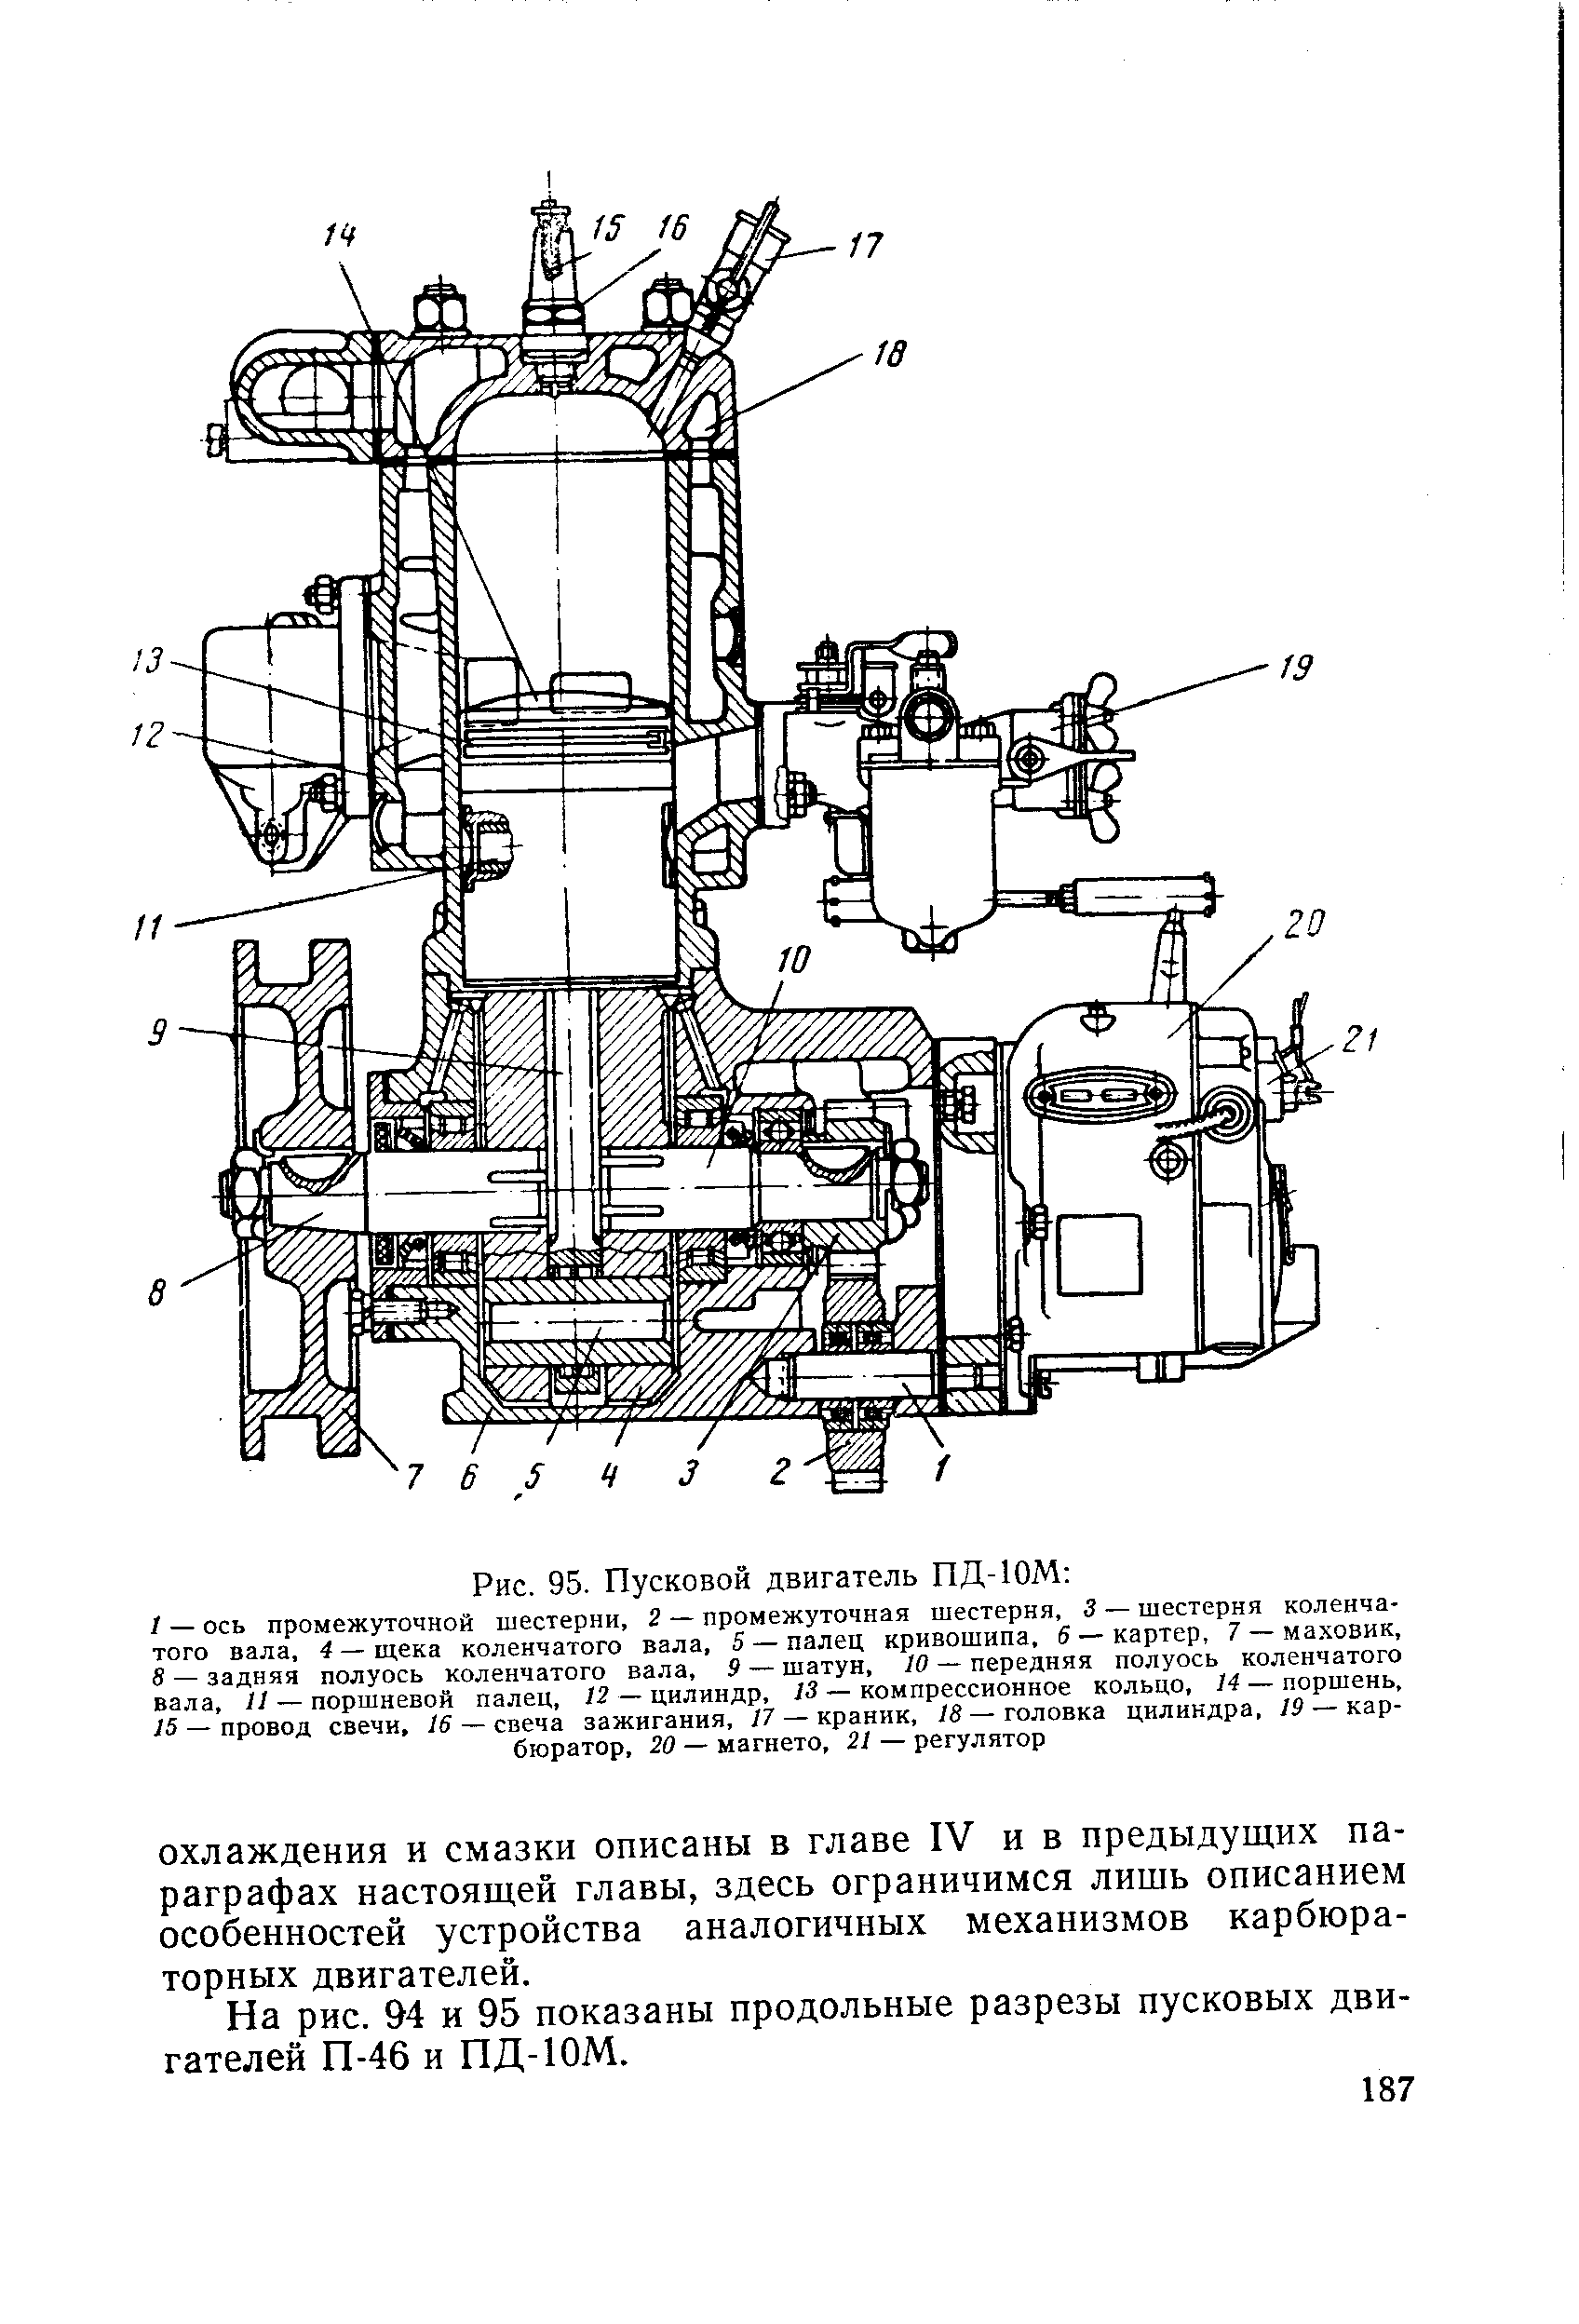 Ремонт пускового двигателя (пд-10) трактора мтз